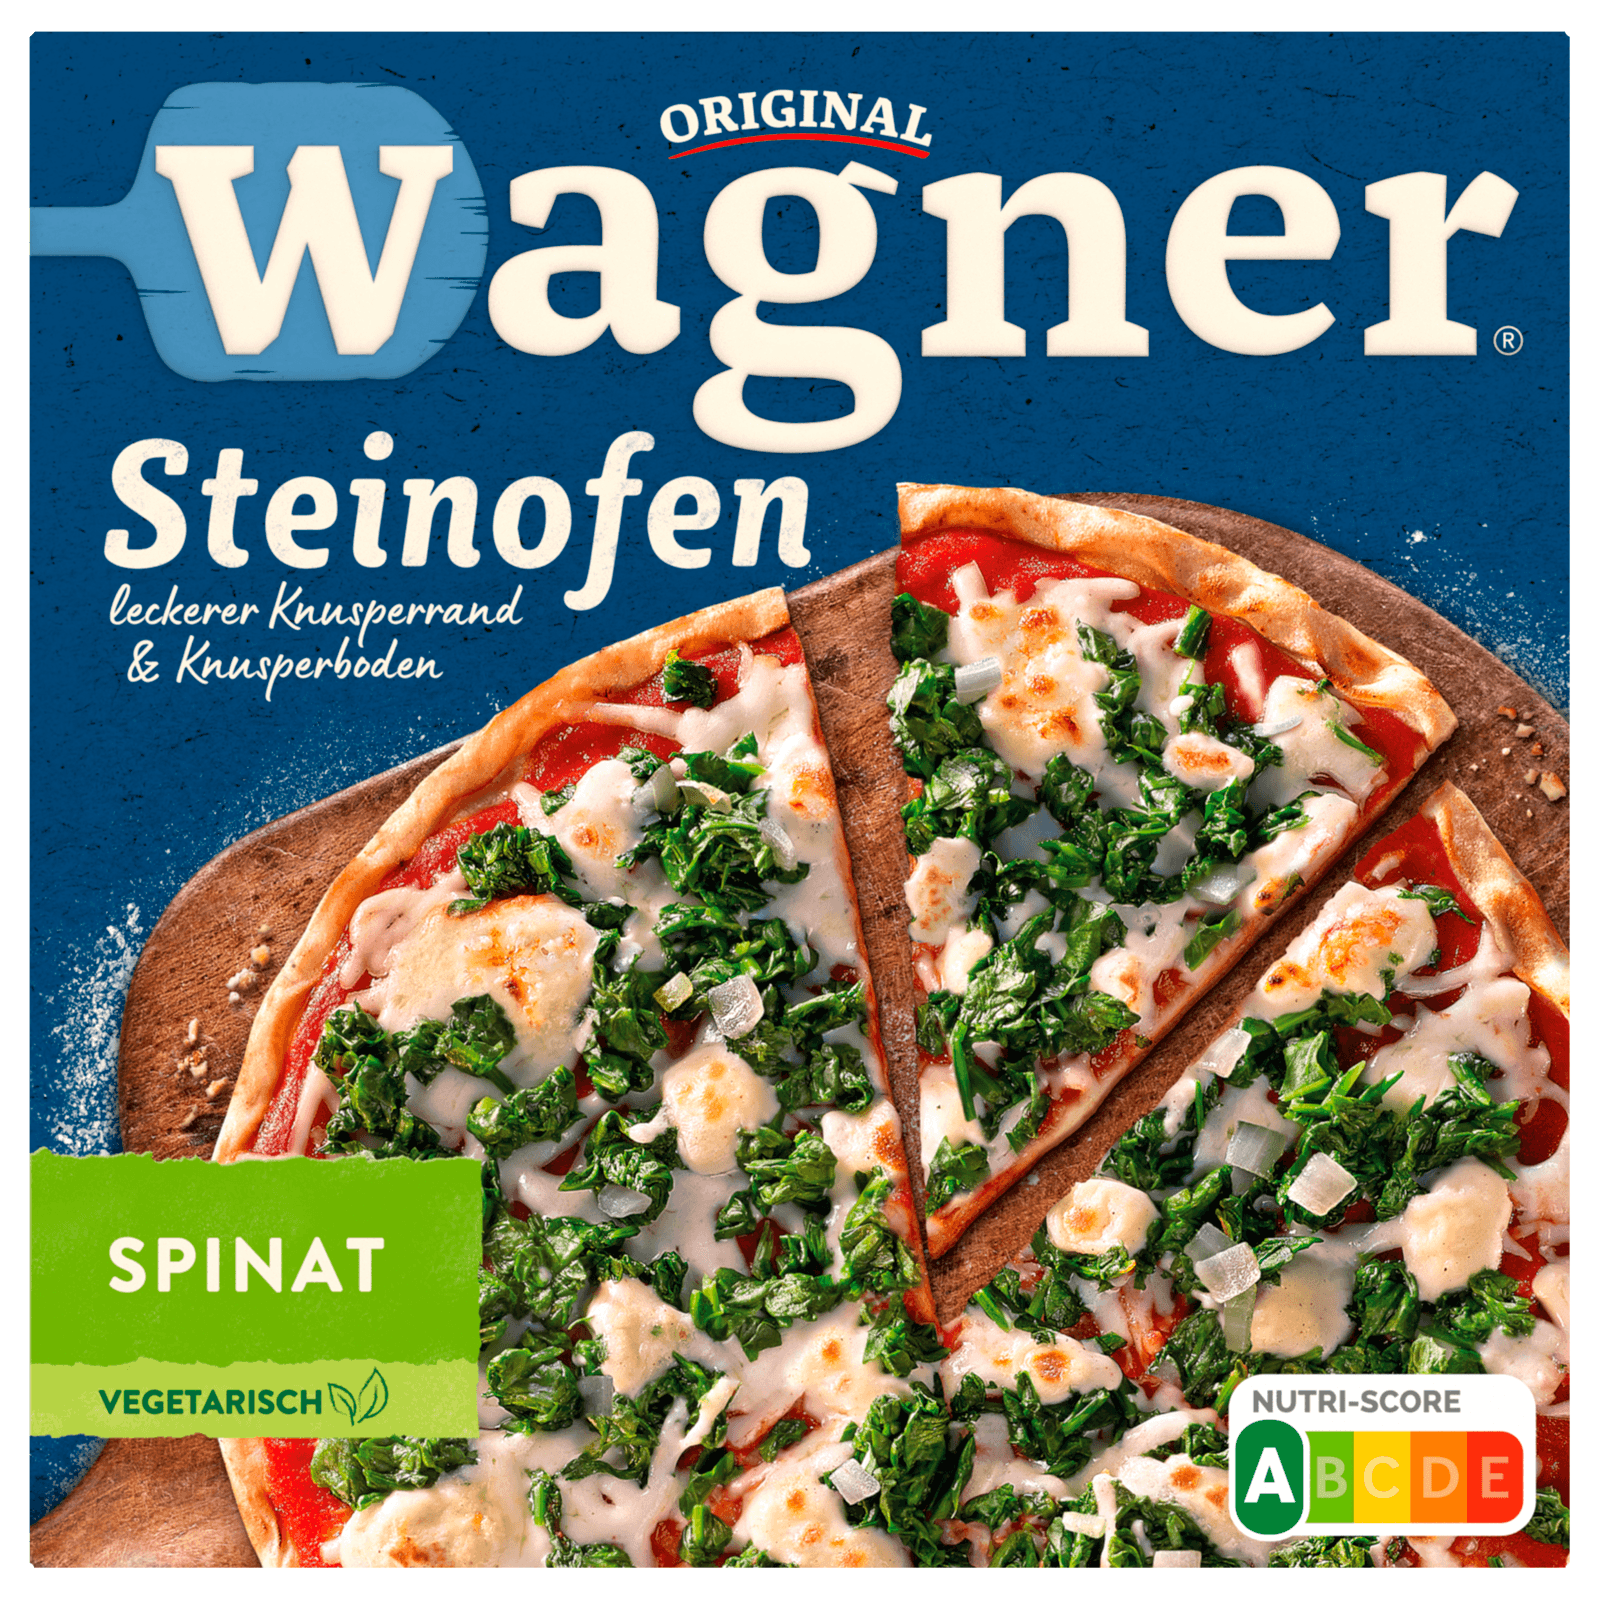 Original Wagner Steinofen Pizza Spinat 360g  für 3.29 EUR